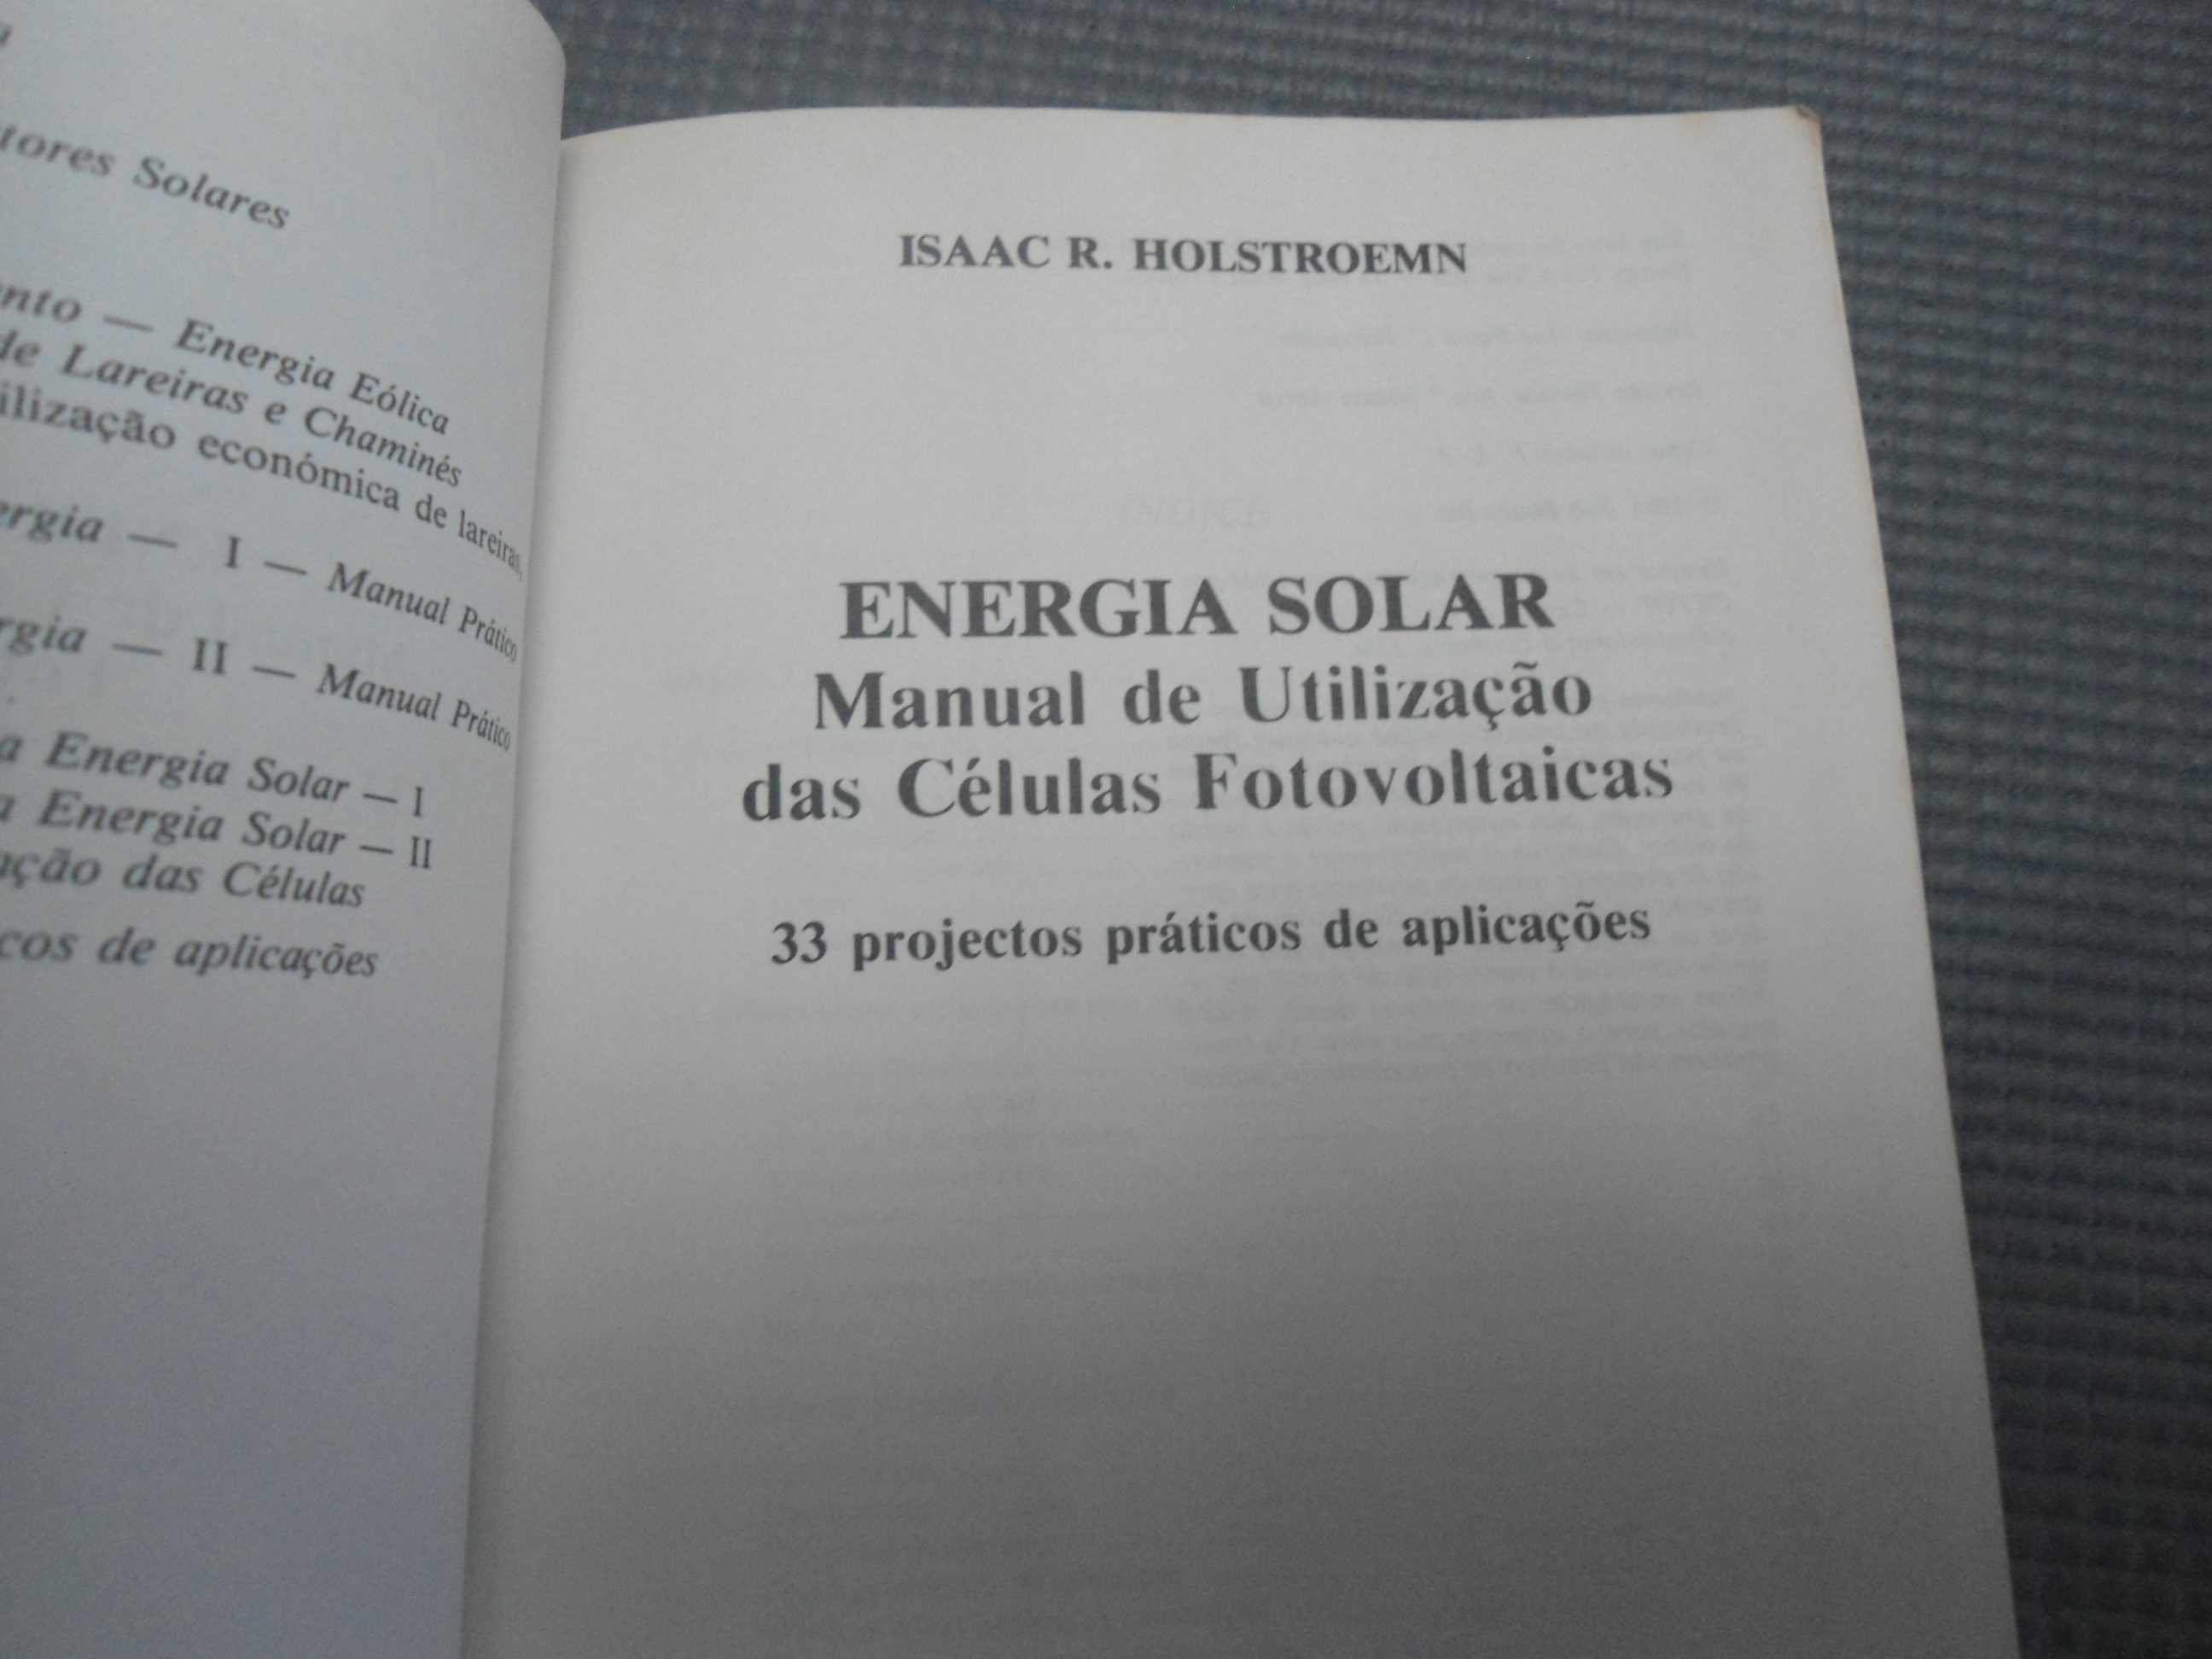 Manual de Utilização das Células Fotovoltaicas por Isaac R. Holstroemn